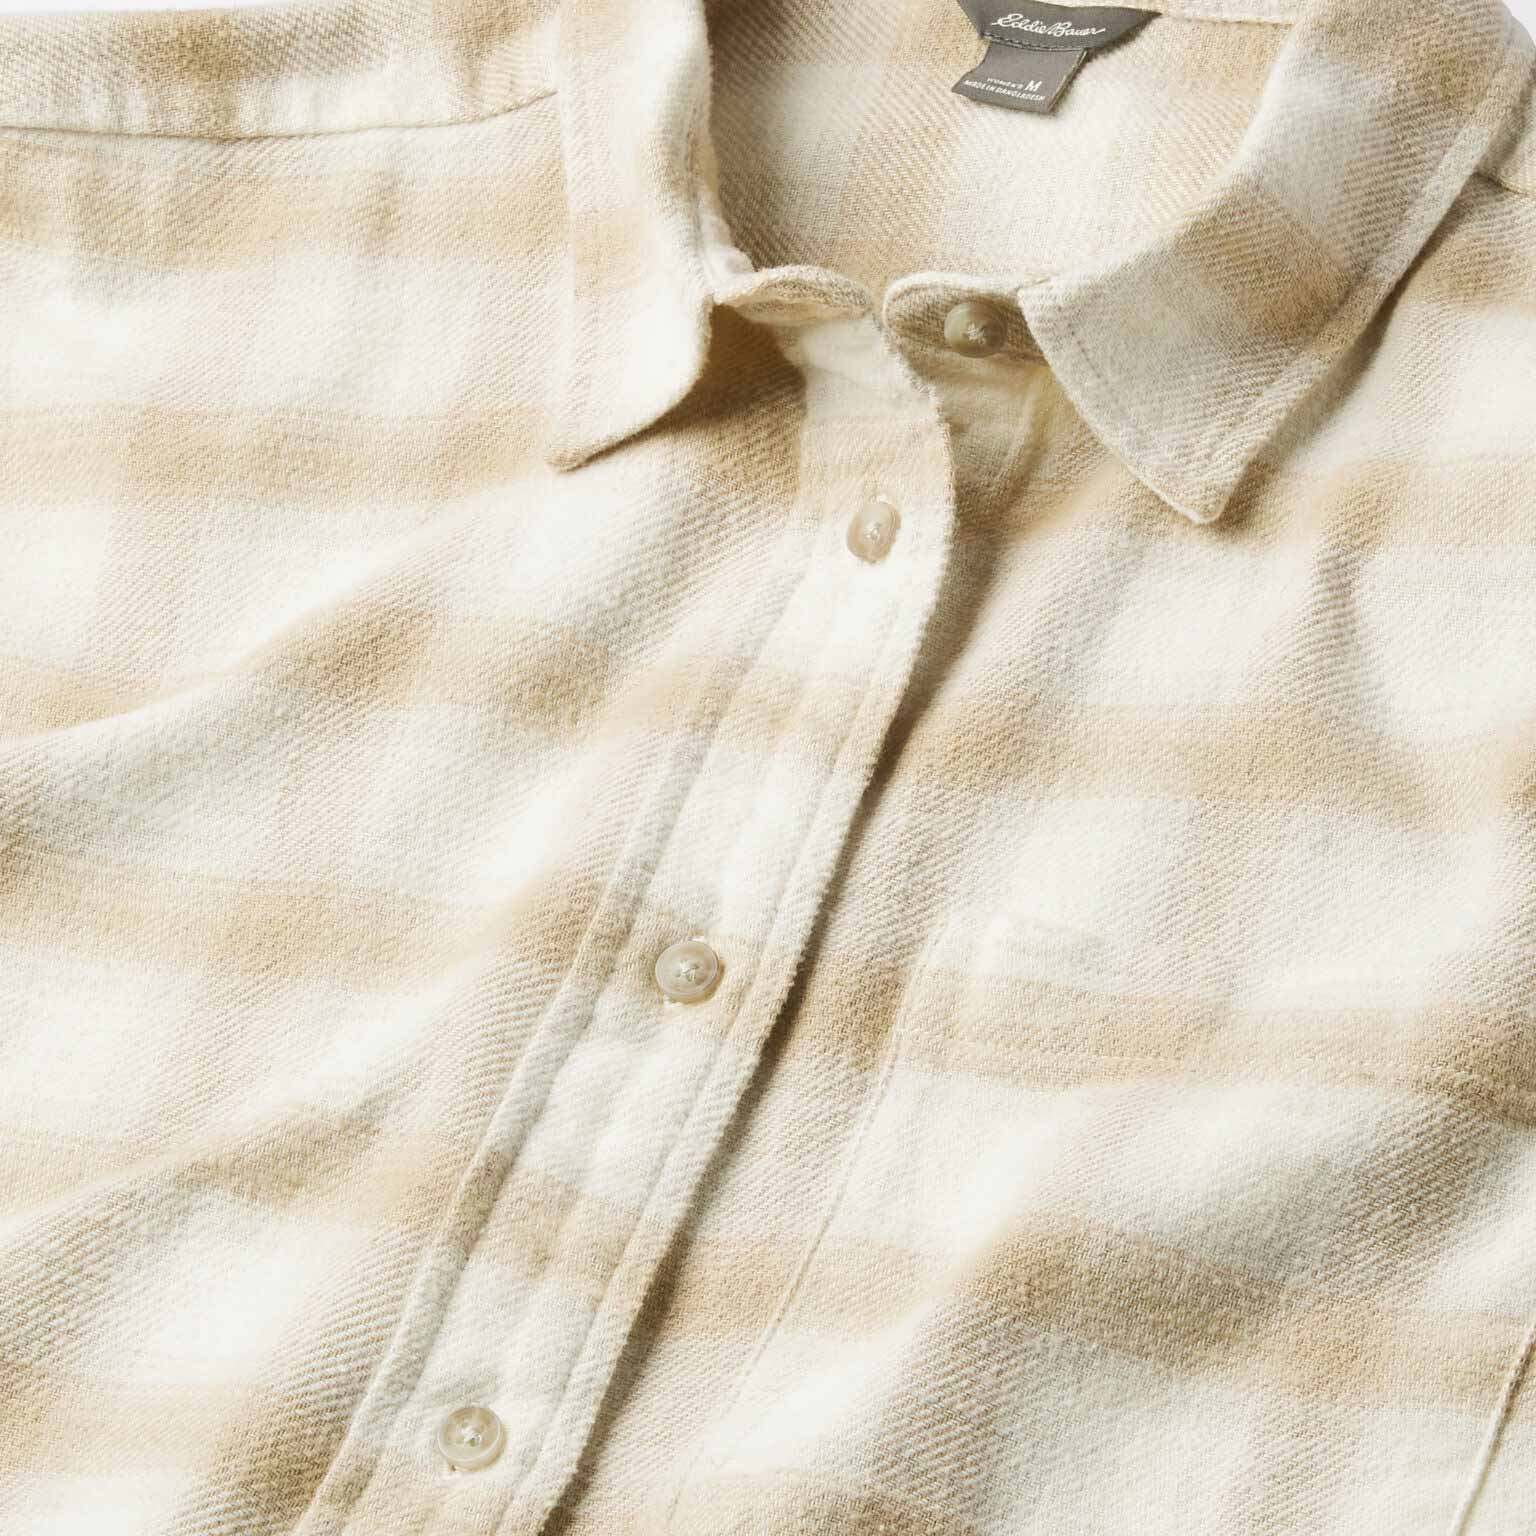 Eddie Bauer cream button down shirt